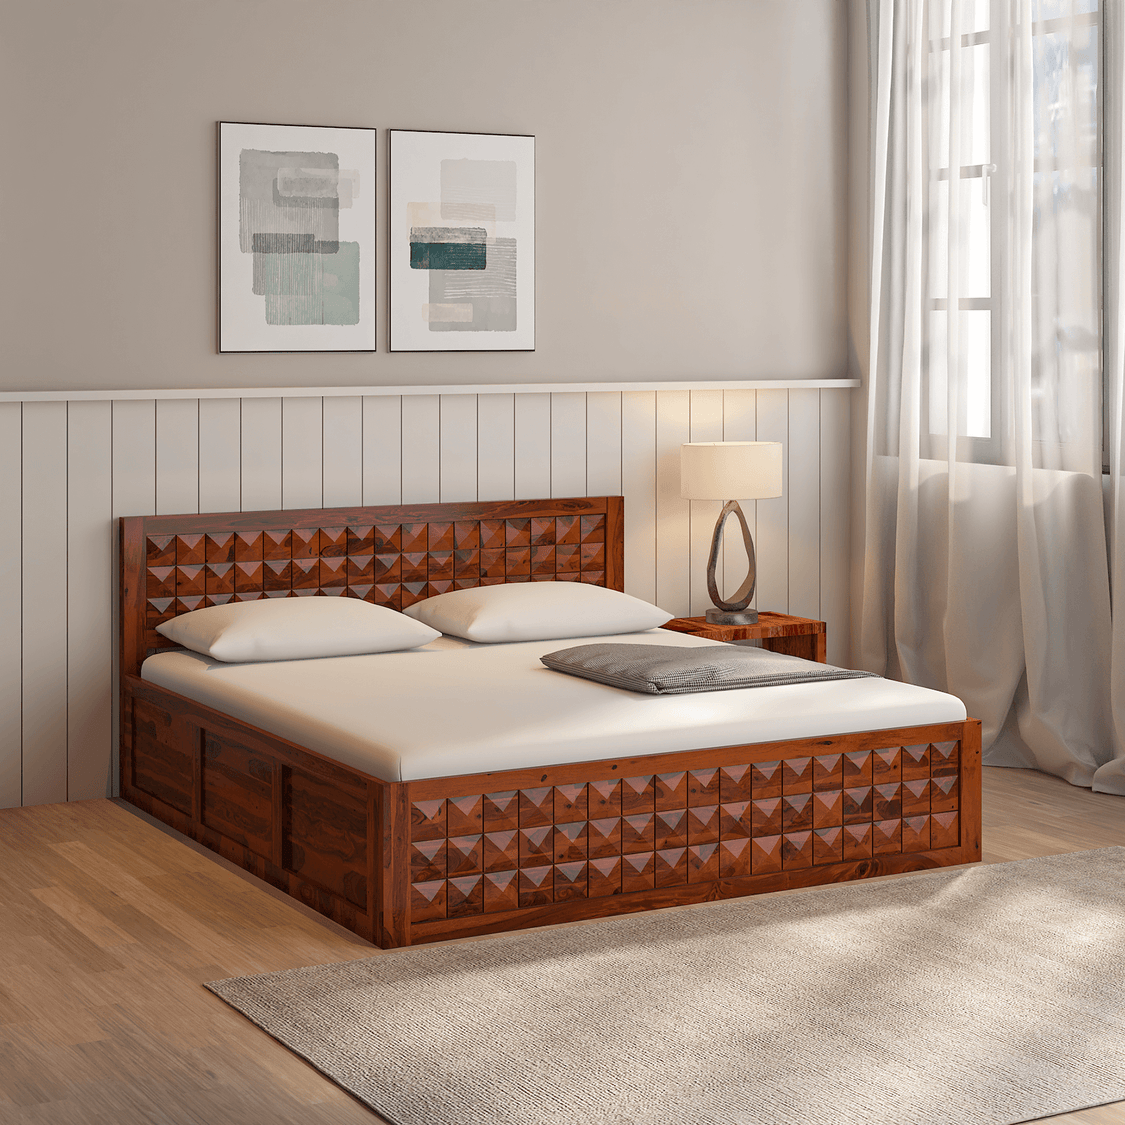 bed sheesham wood bed bedroom furniture living room furniture sheesham wood wooden bed